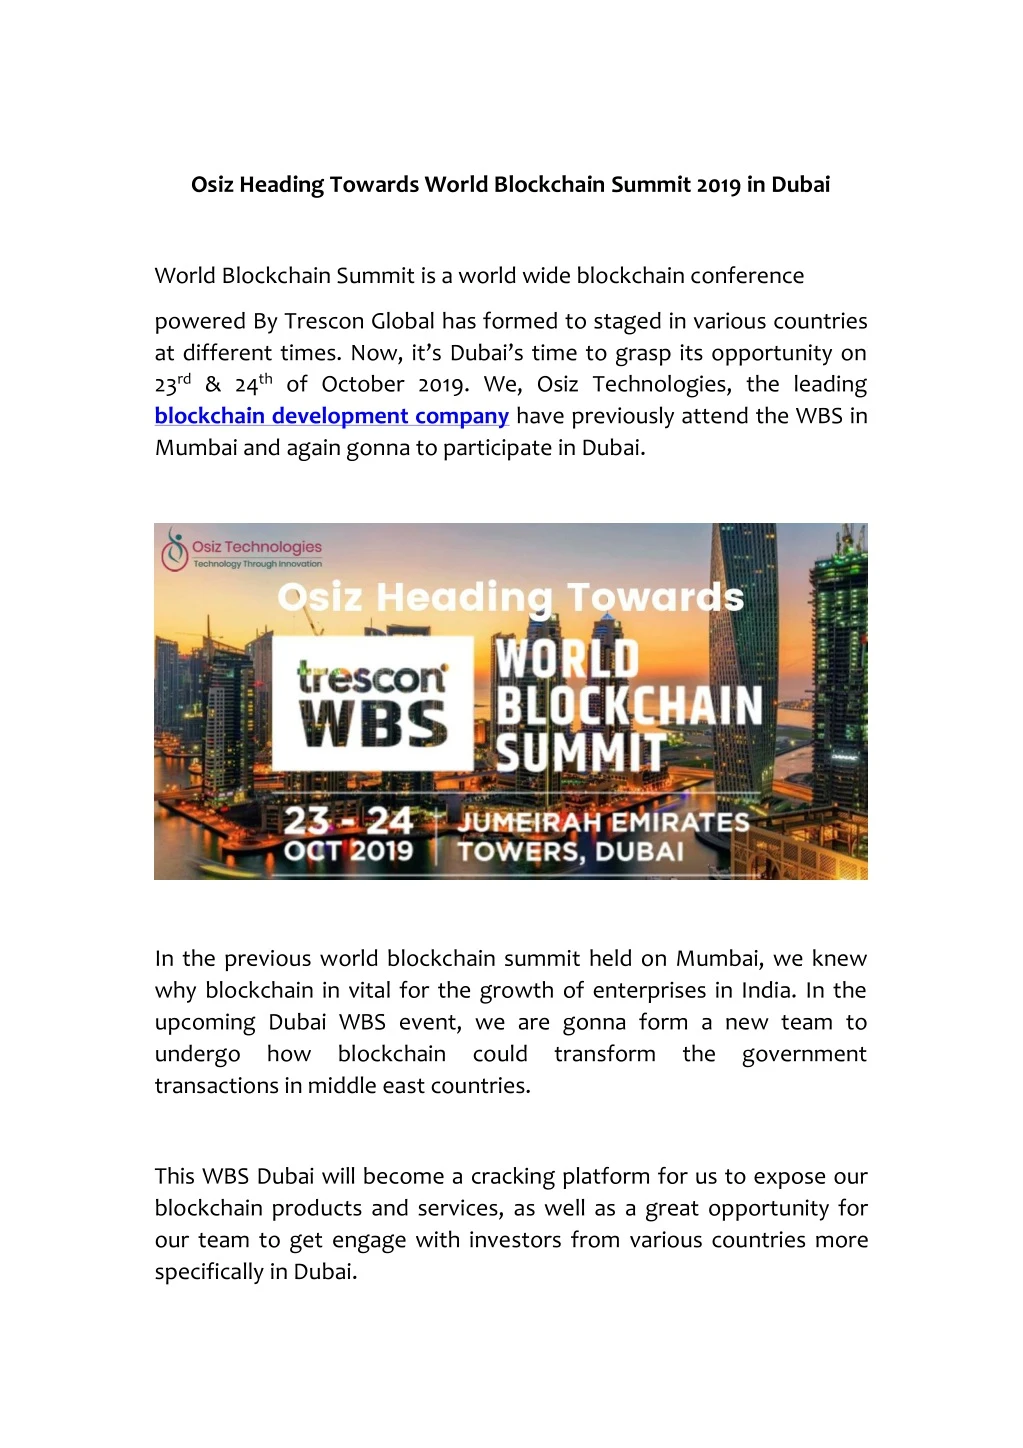 osiz heading towards world blockchain summit 2019